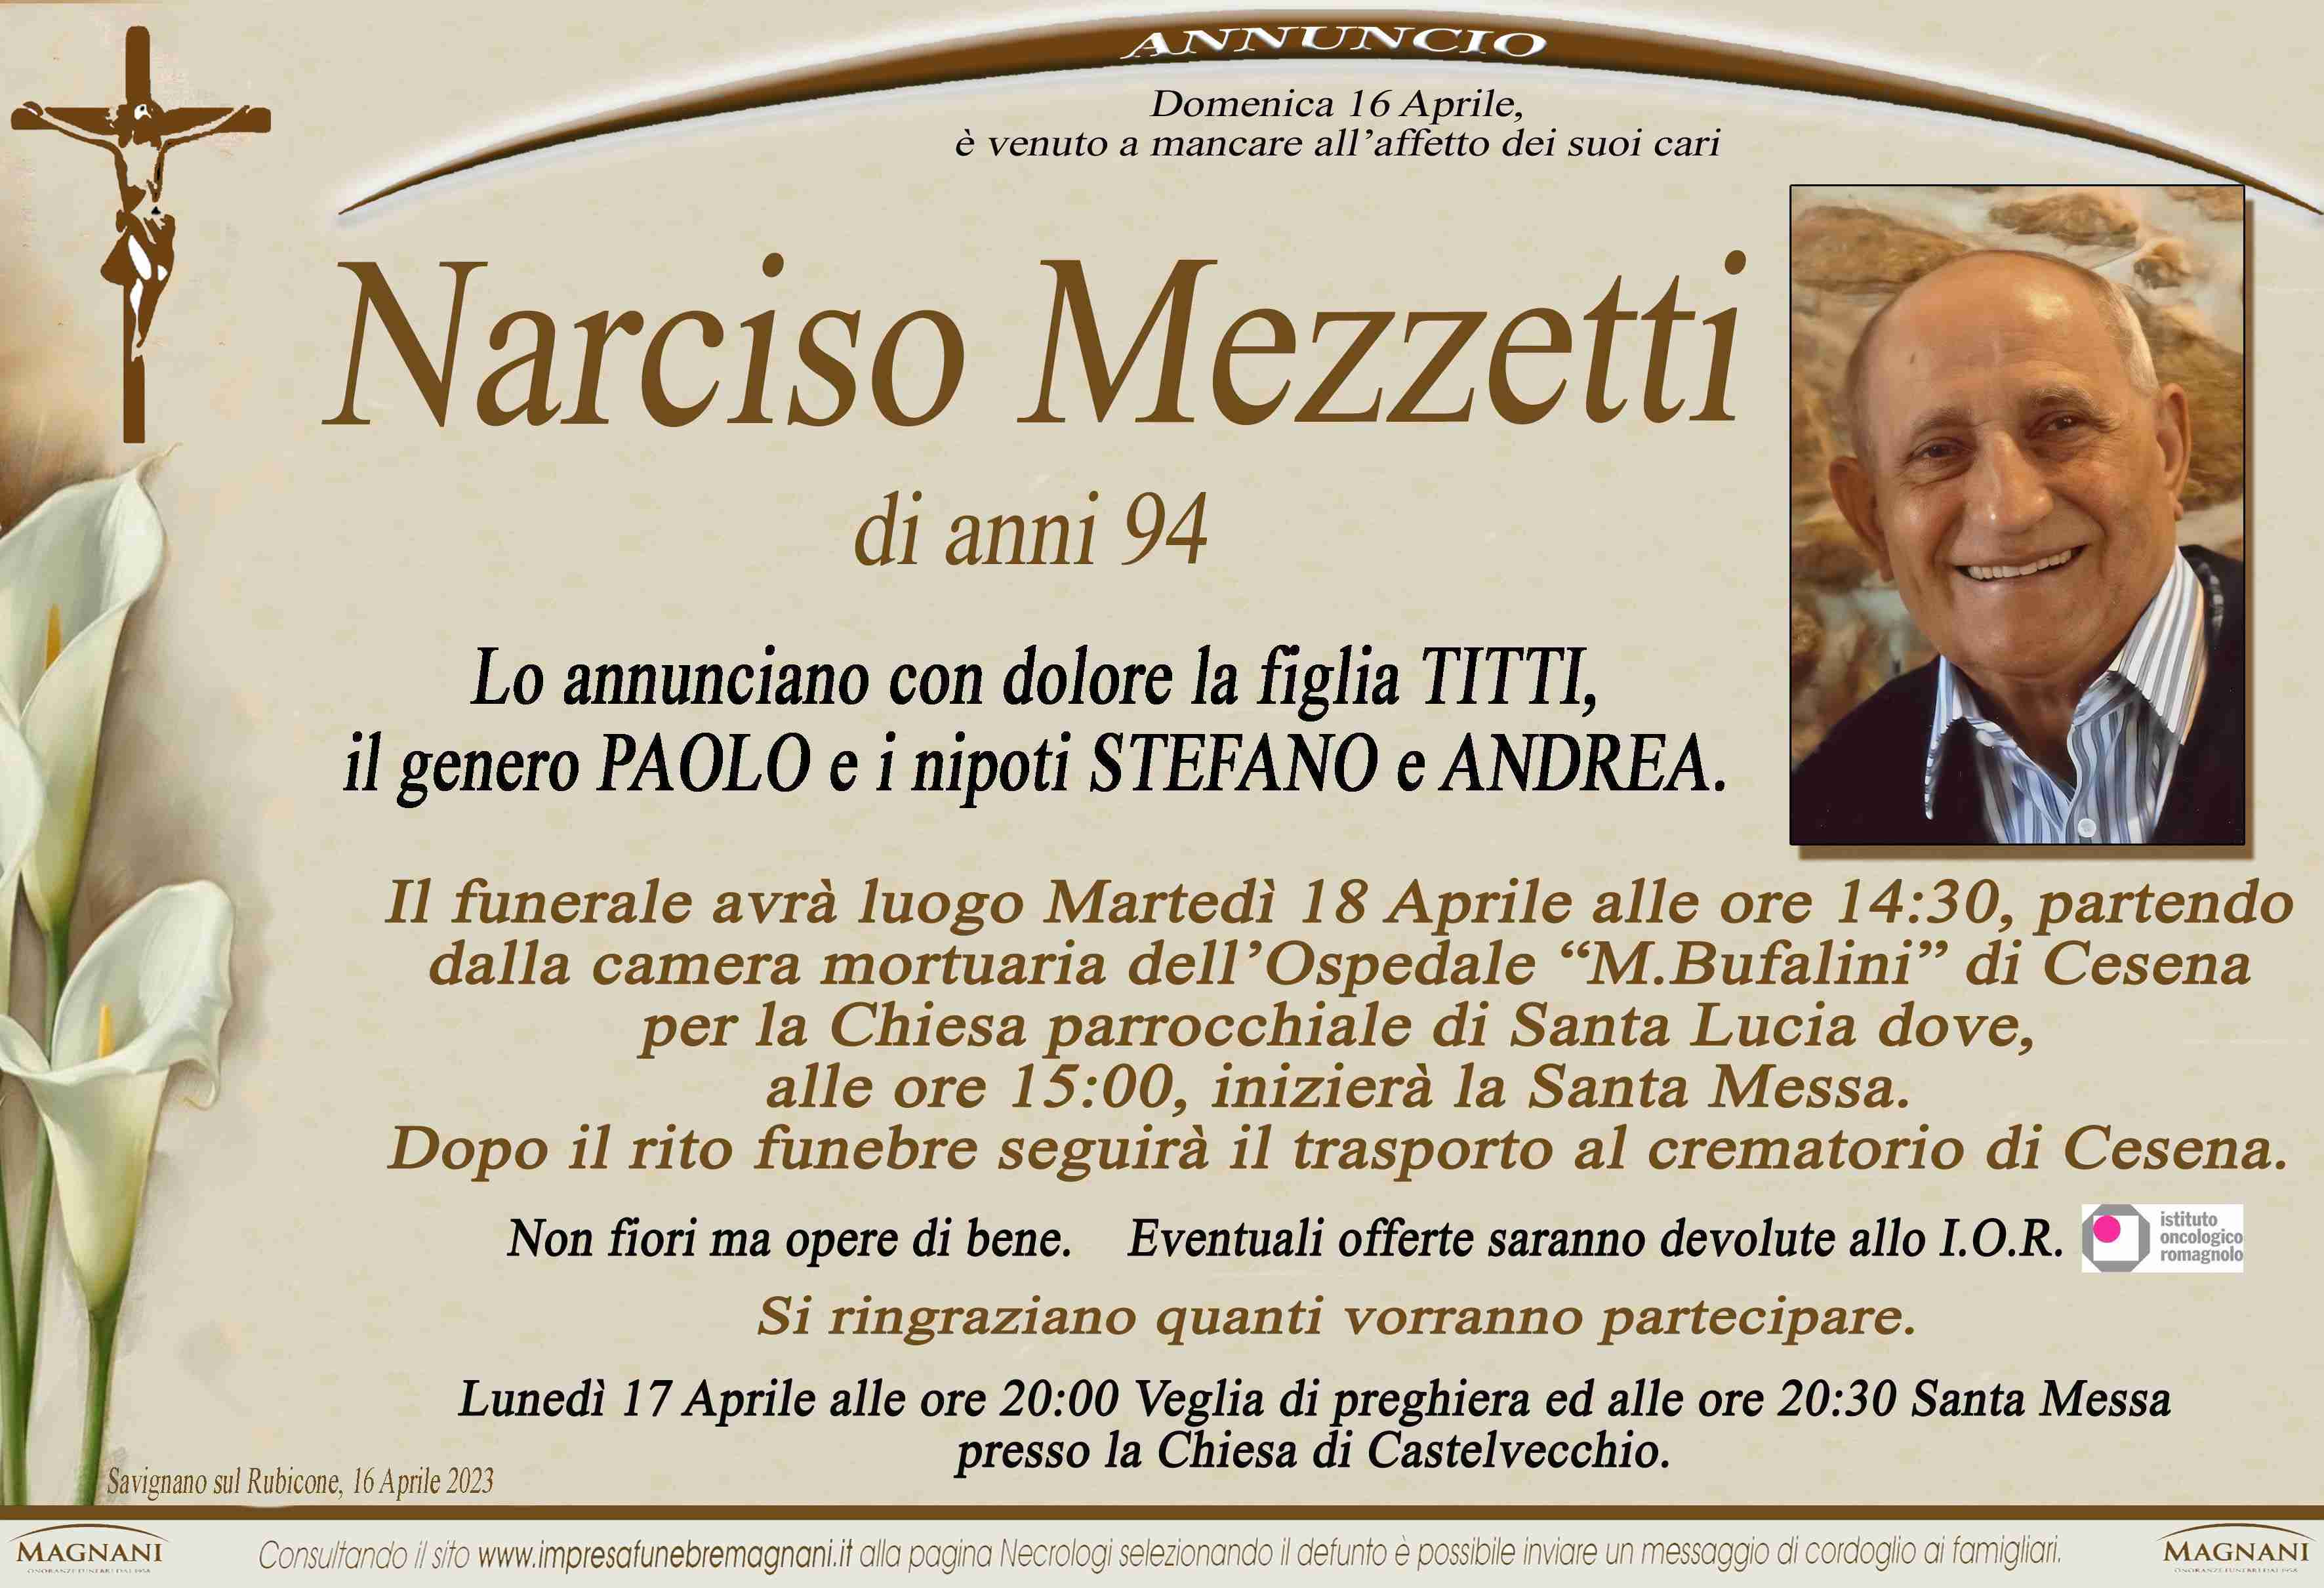 Narciso Mezzetti